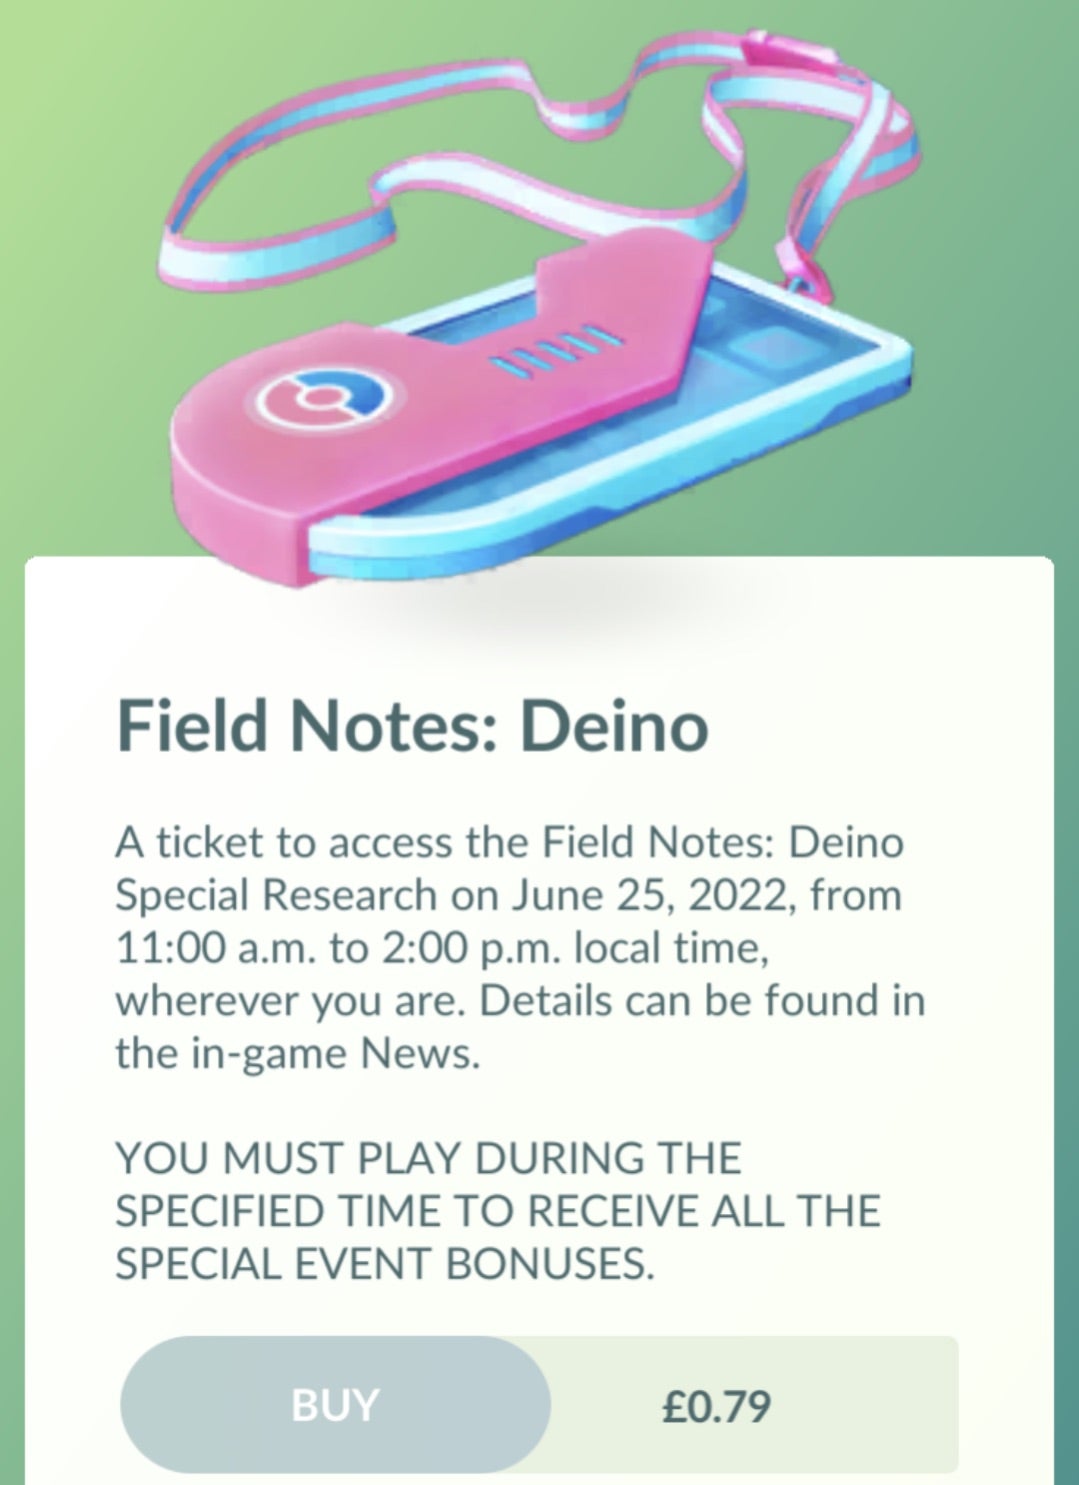 Pokemon Go event pass